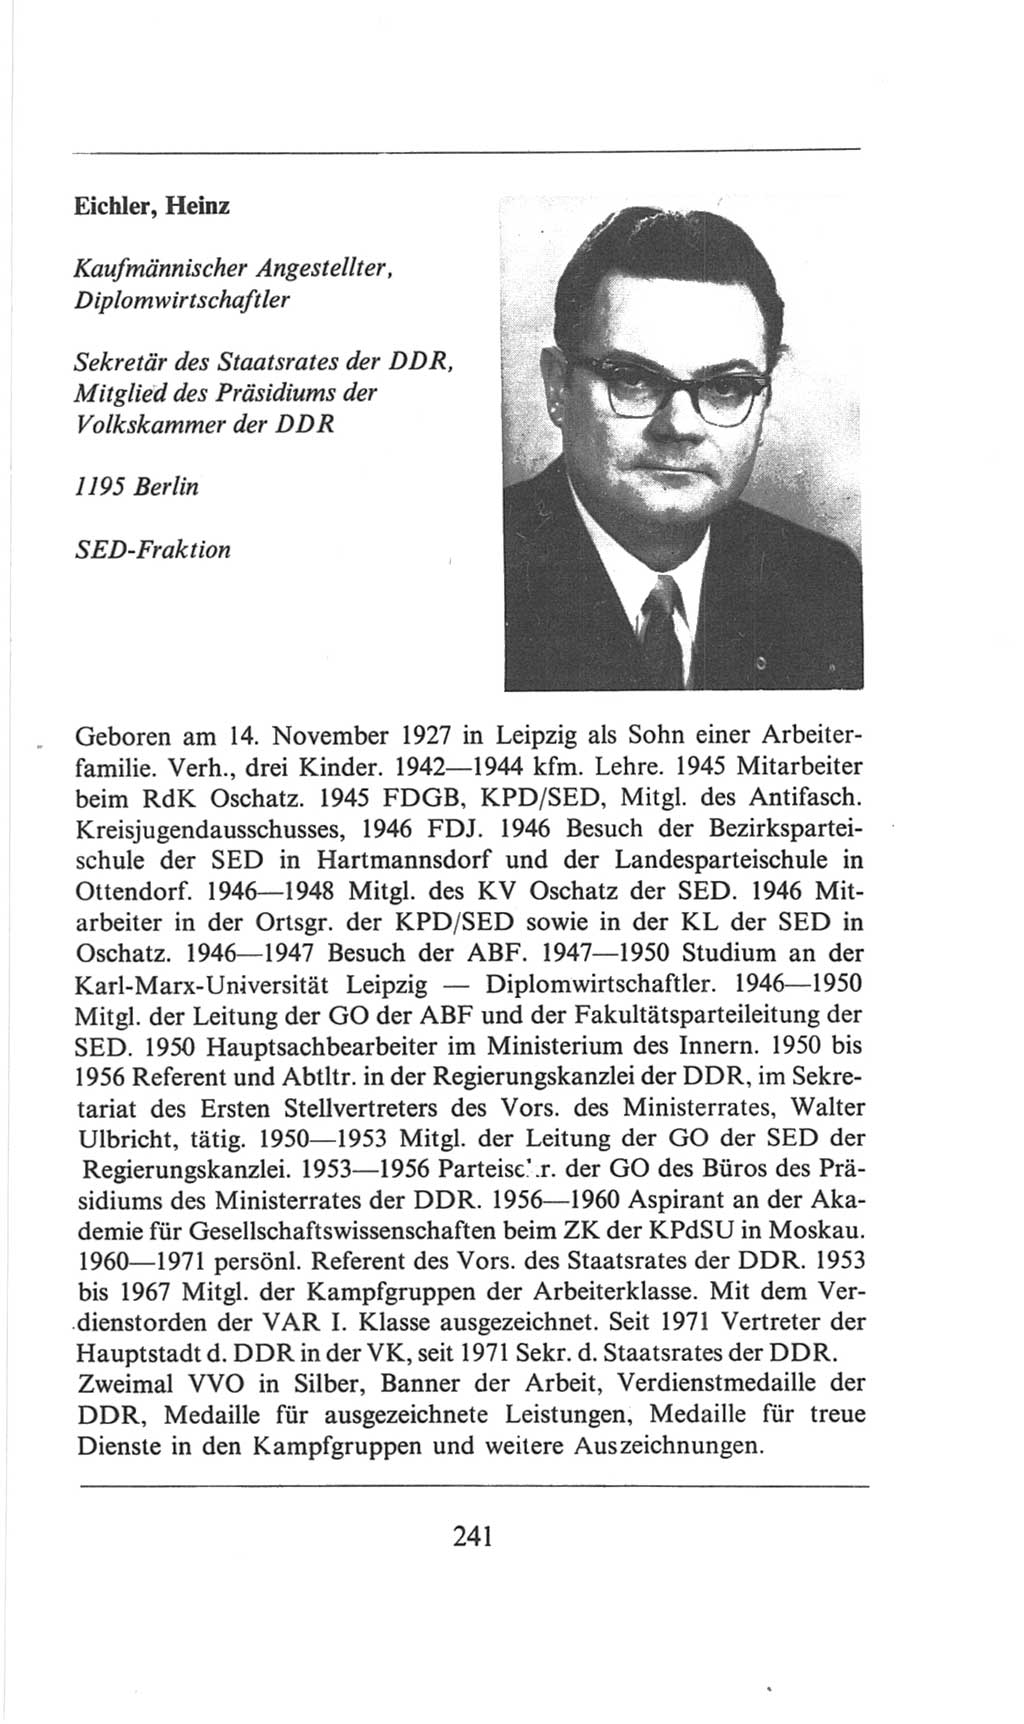 Volkskammer (VK) der Deutschen Demokratischen Republik (DDR), 6. Wahlperiode 1971-1976, Seite 241 (VK. DDR 6. WP. 1971-1976, S. 241)